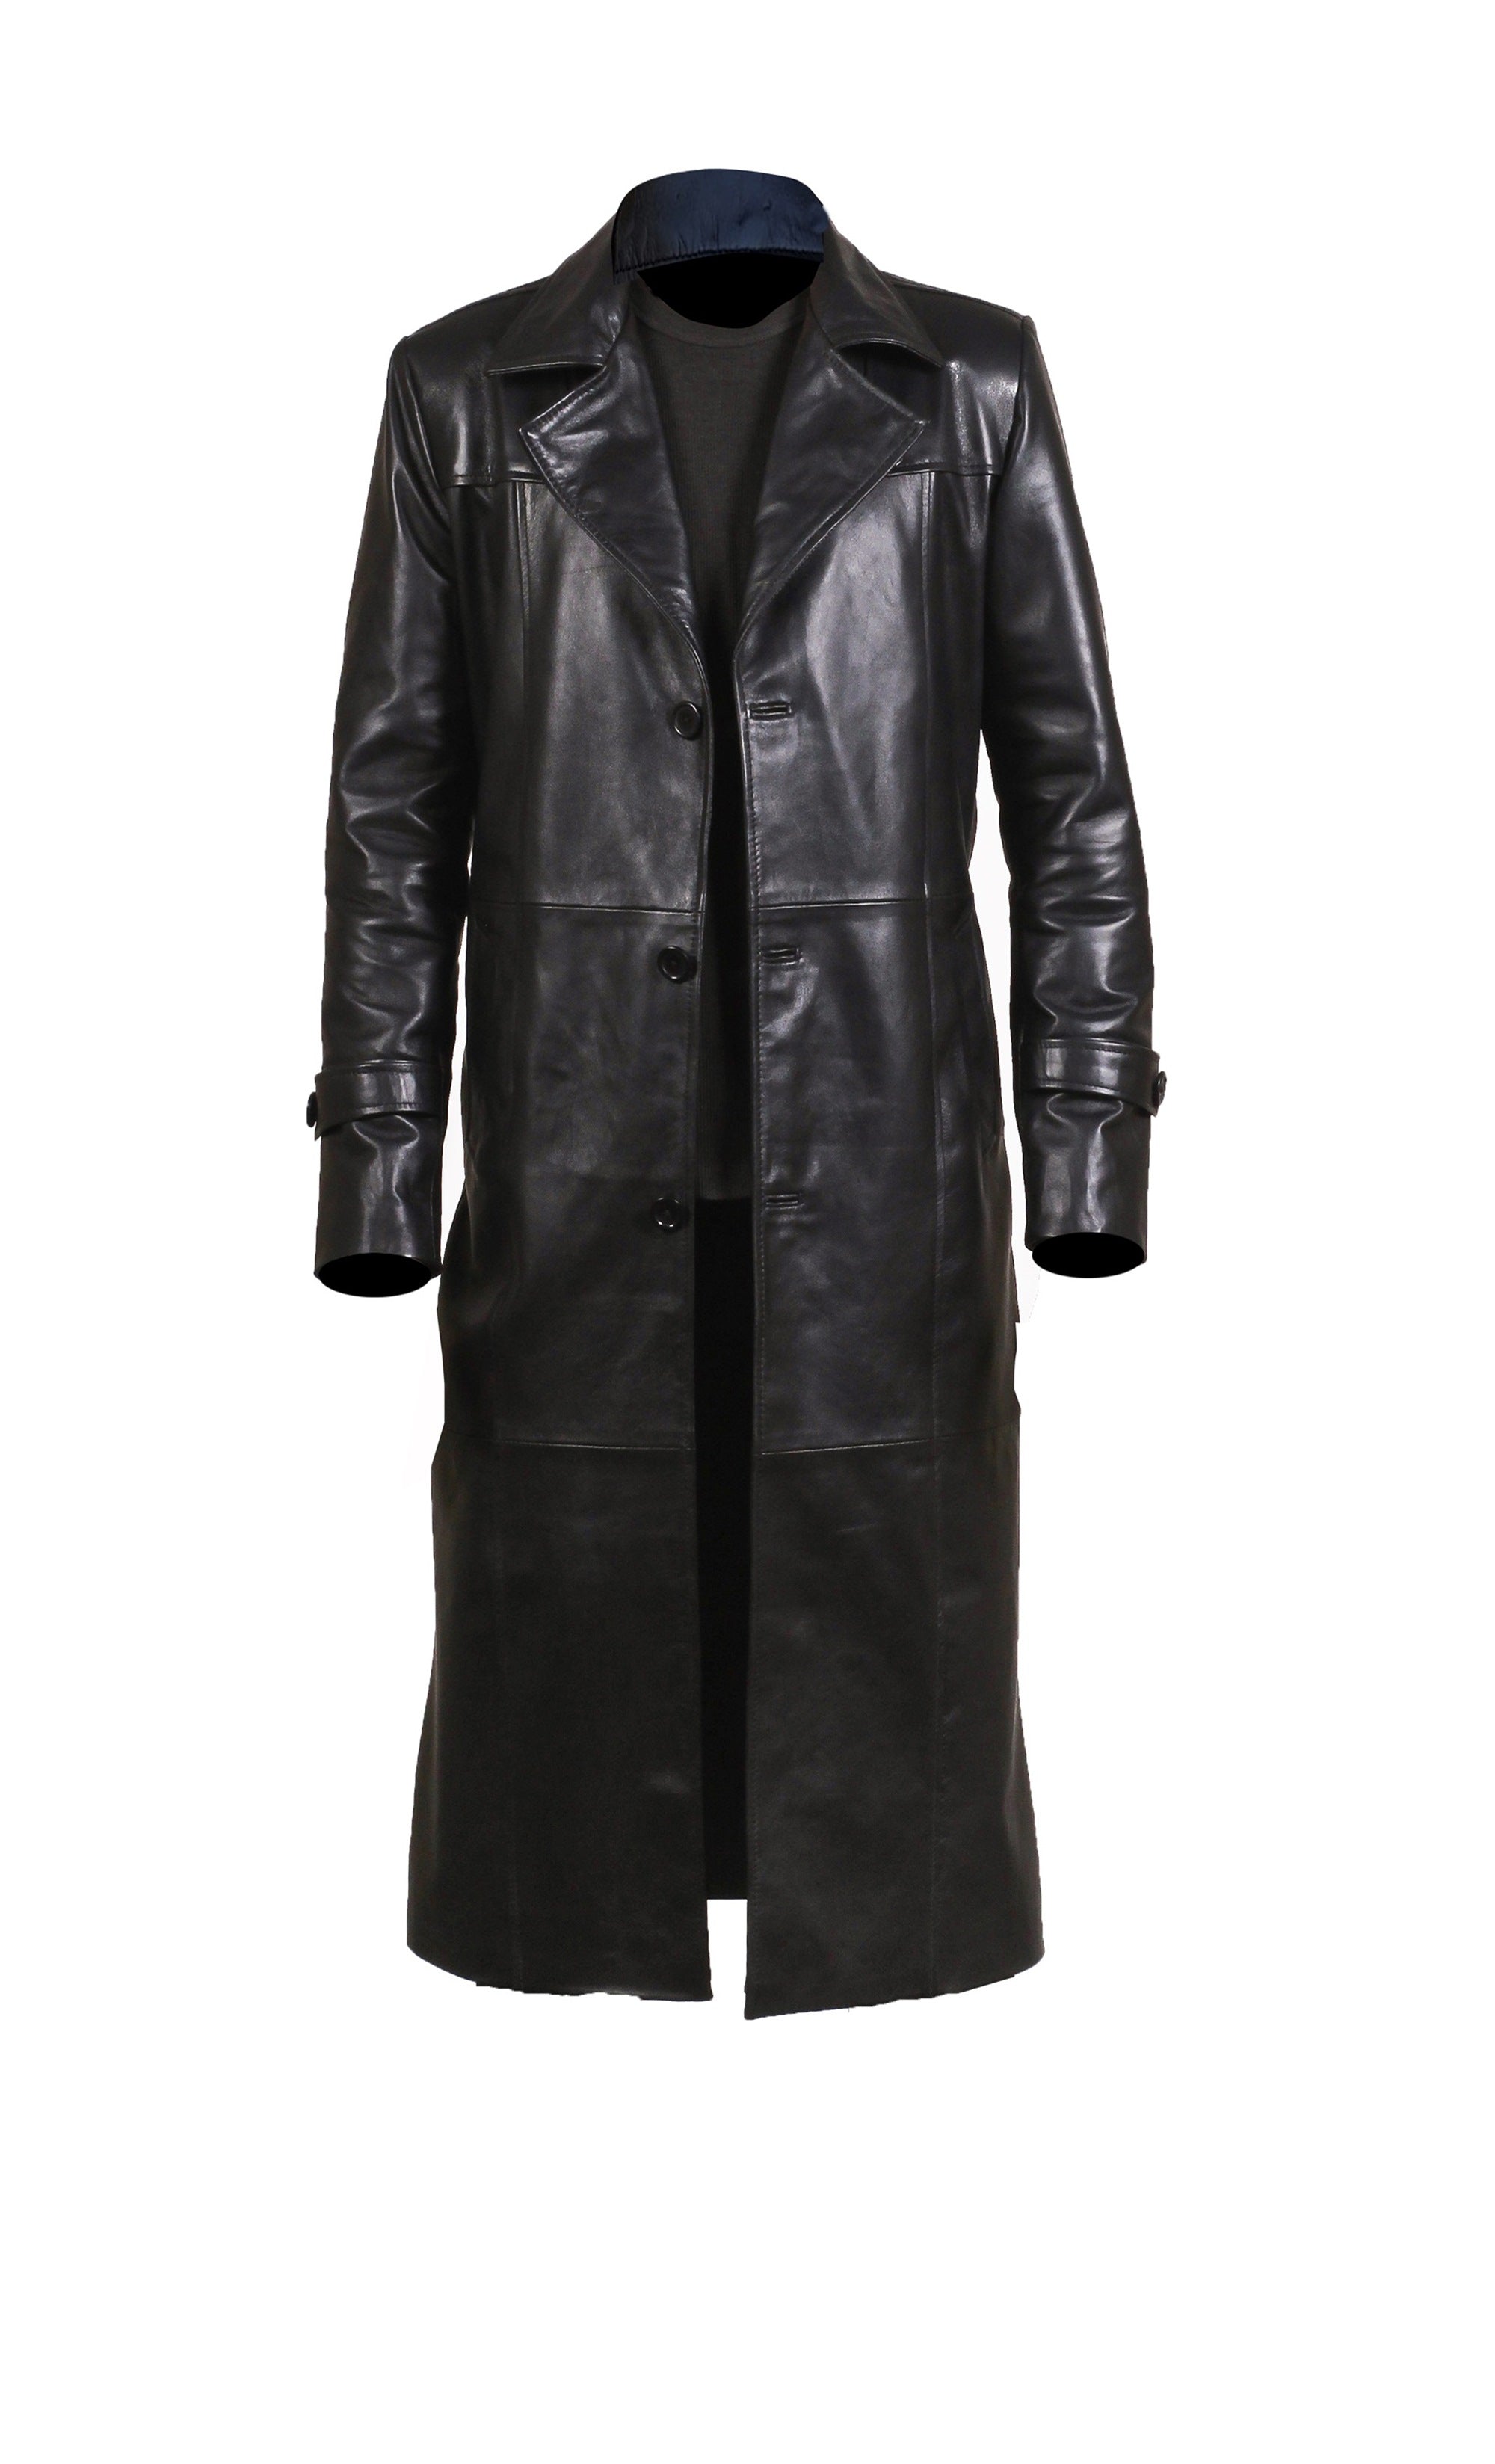 Men Black Leather Trench Coat Leather Vintage Coat For Men